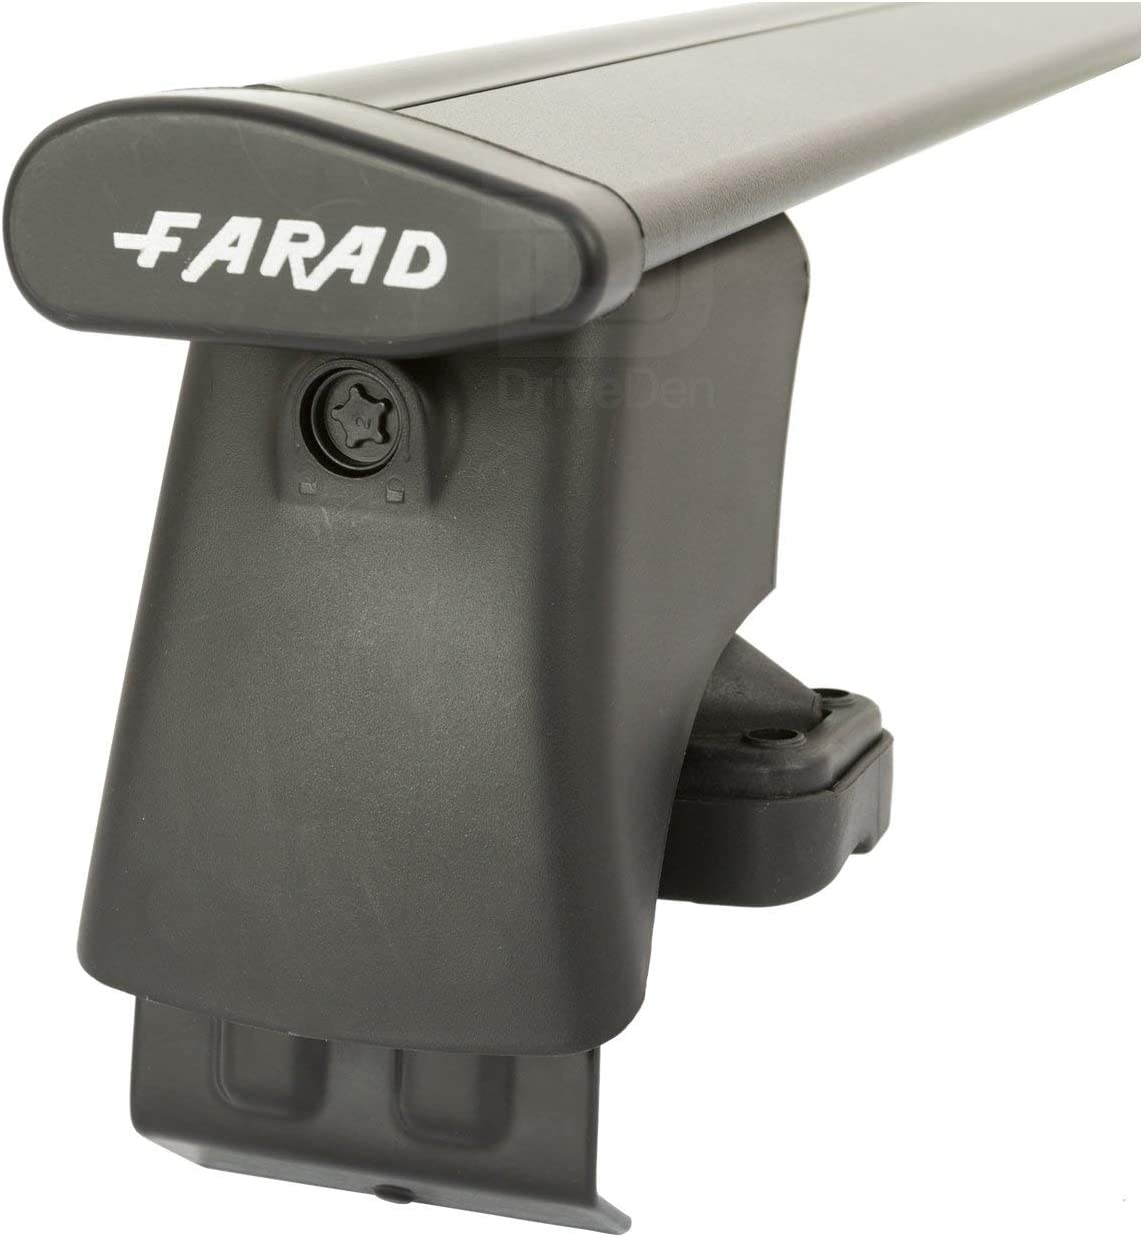 FARAD-Kit H2 per barre portatutto - Volkswagen Polo 2001-2009 (senza corrimano)